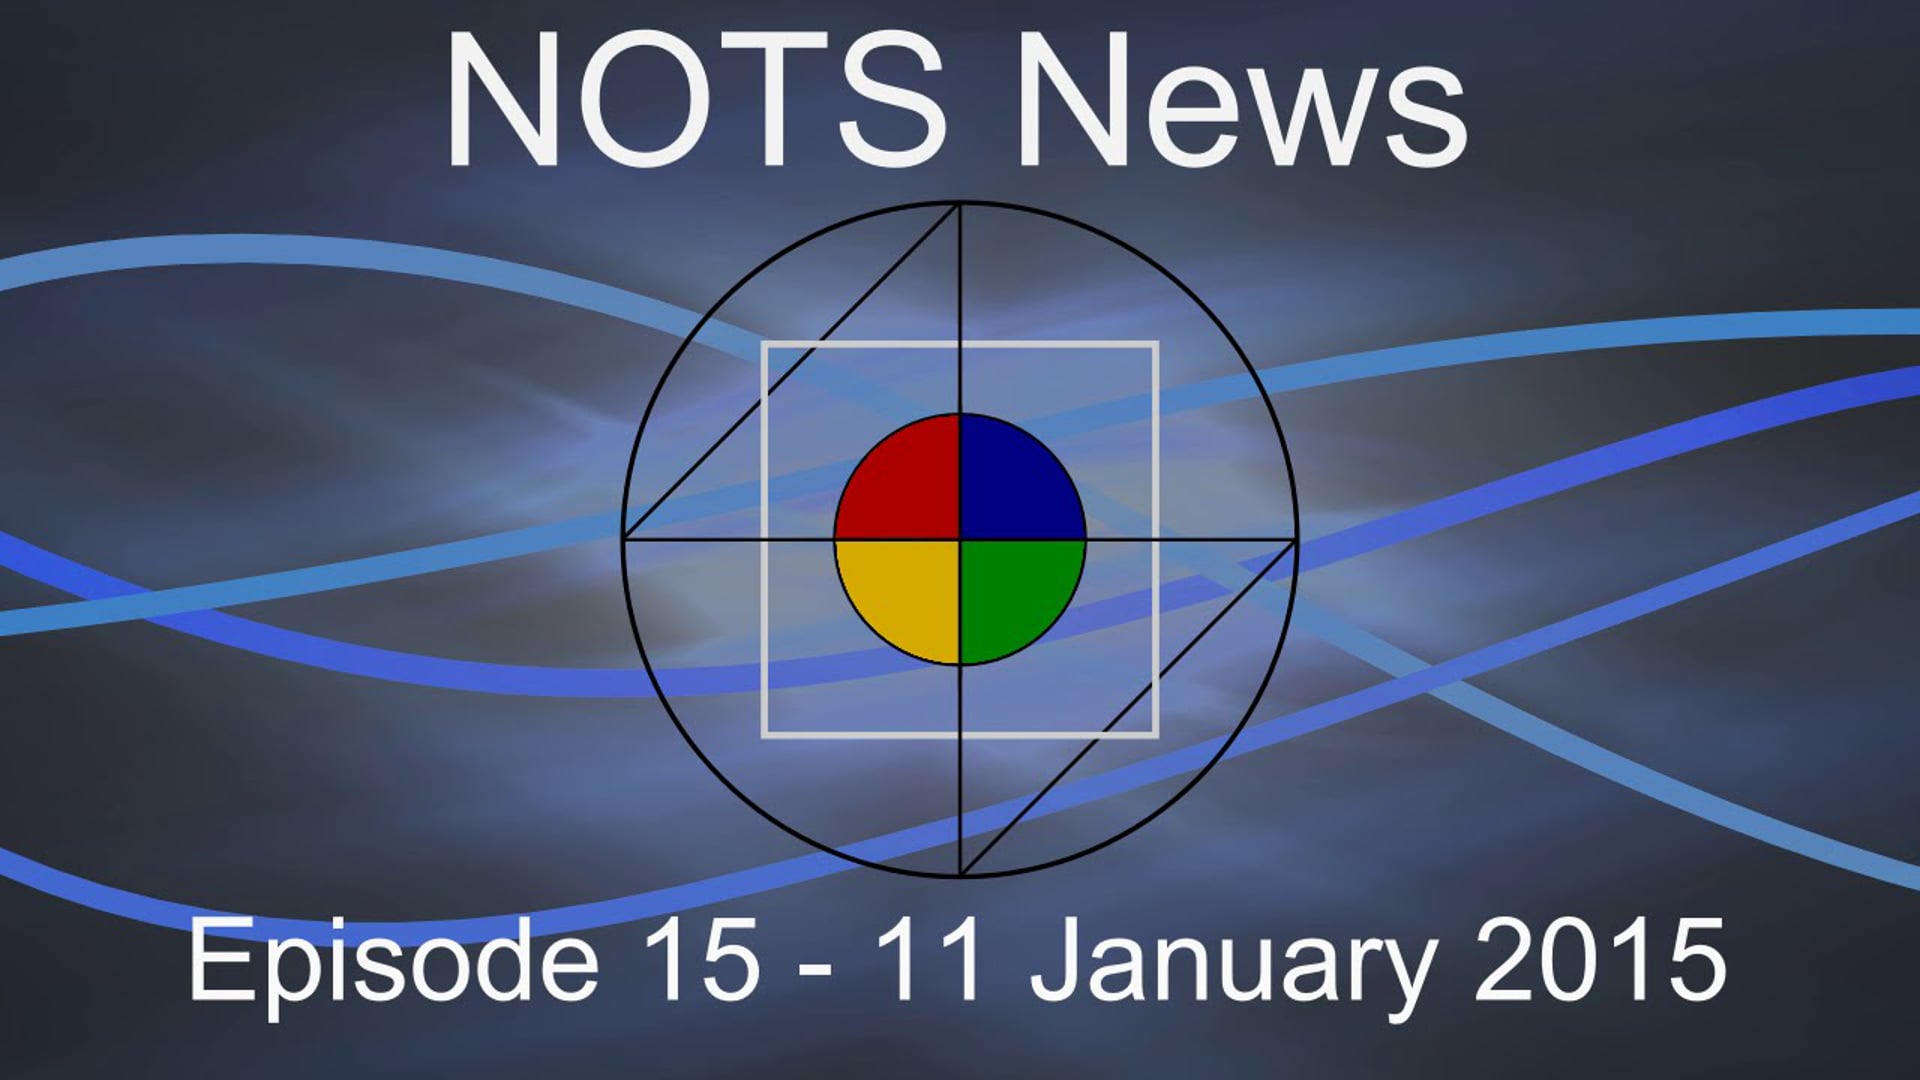 11 January 2015 - NOTS News